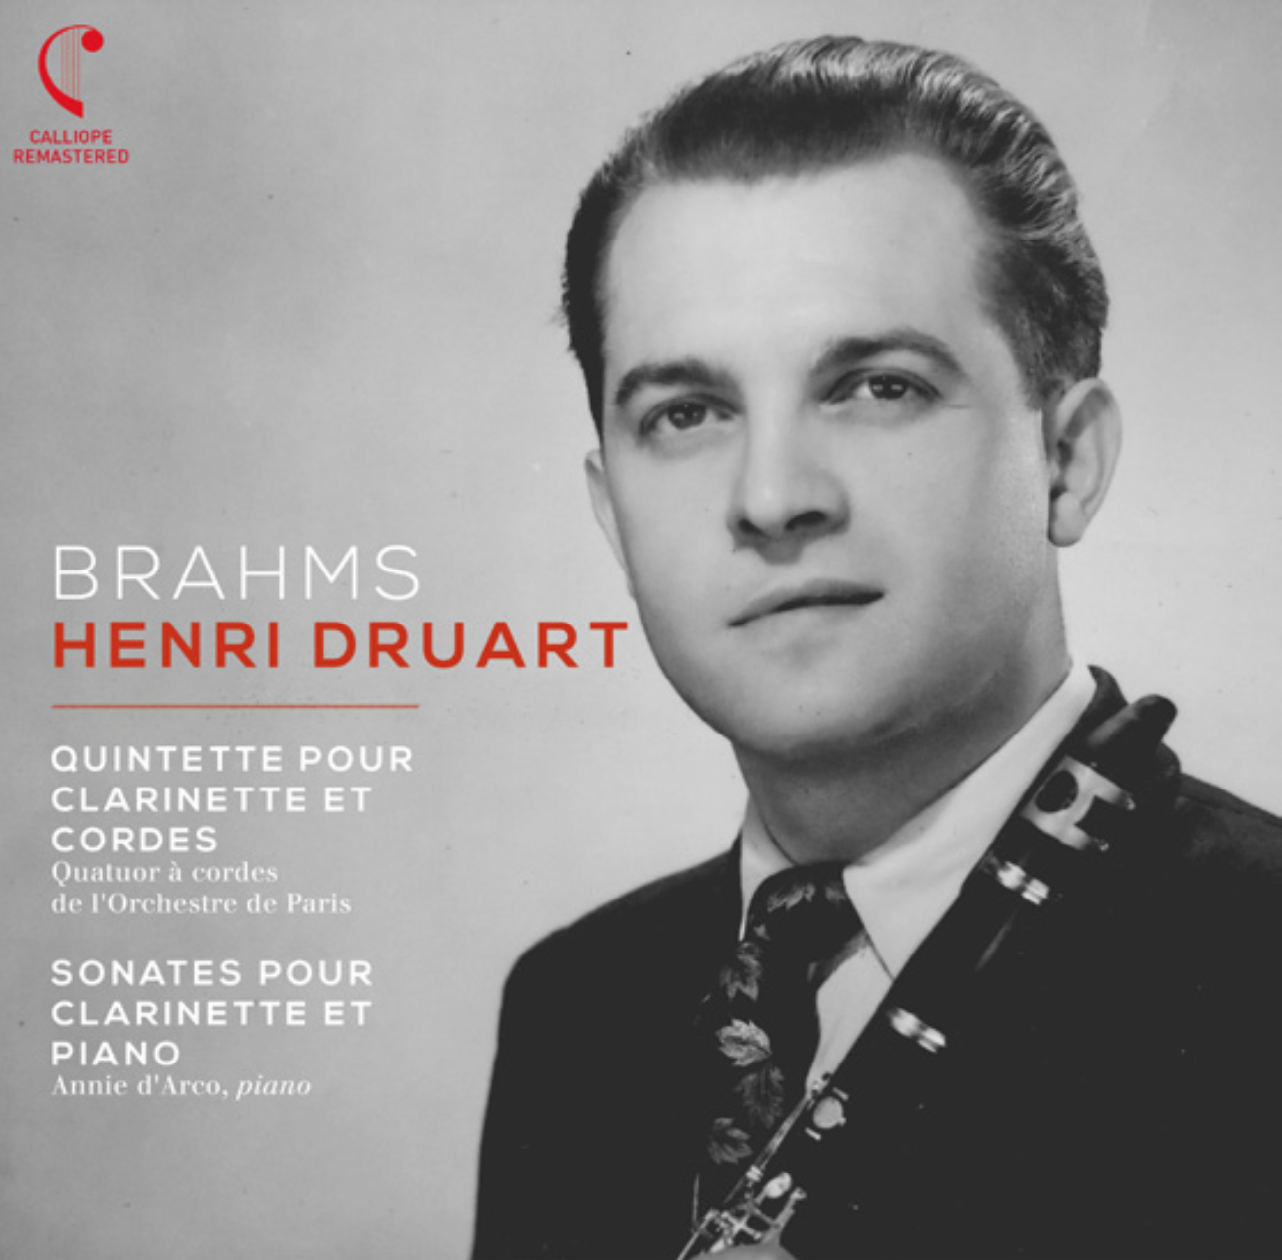 Henri Druart